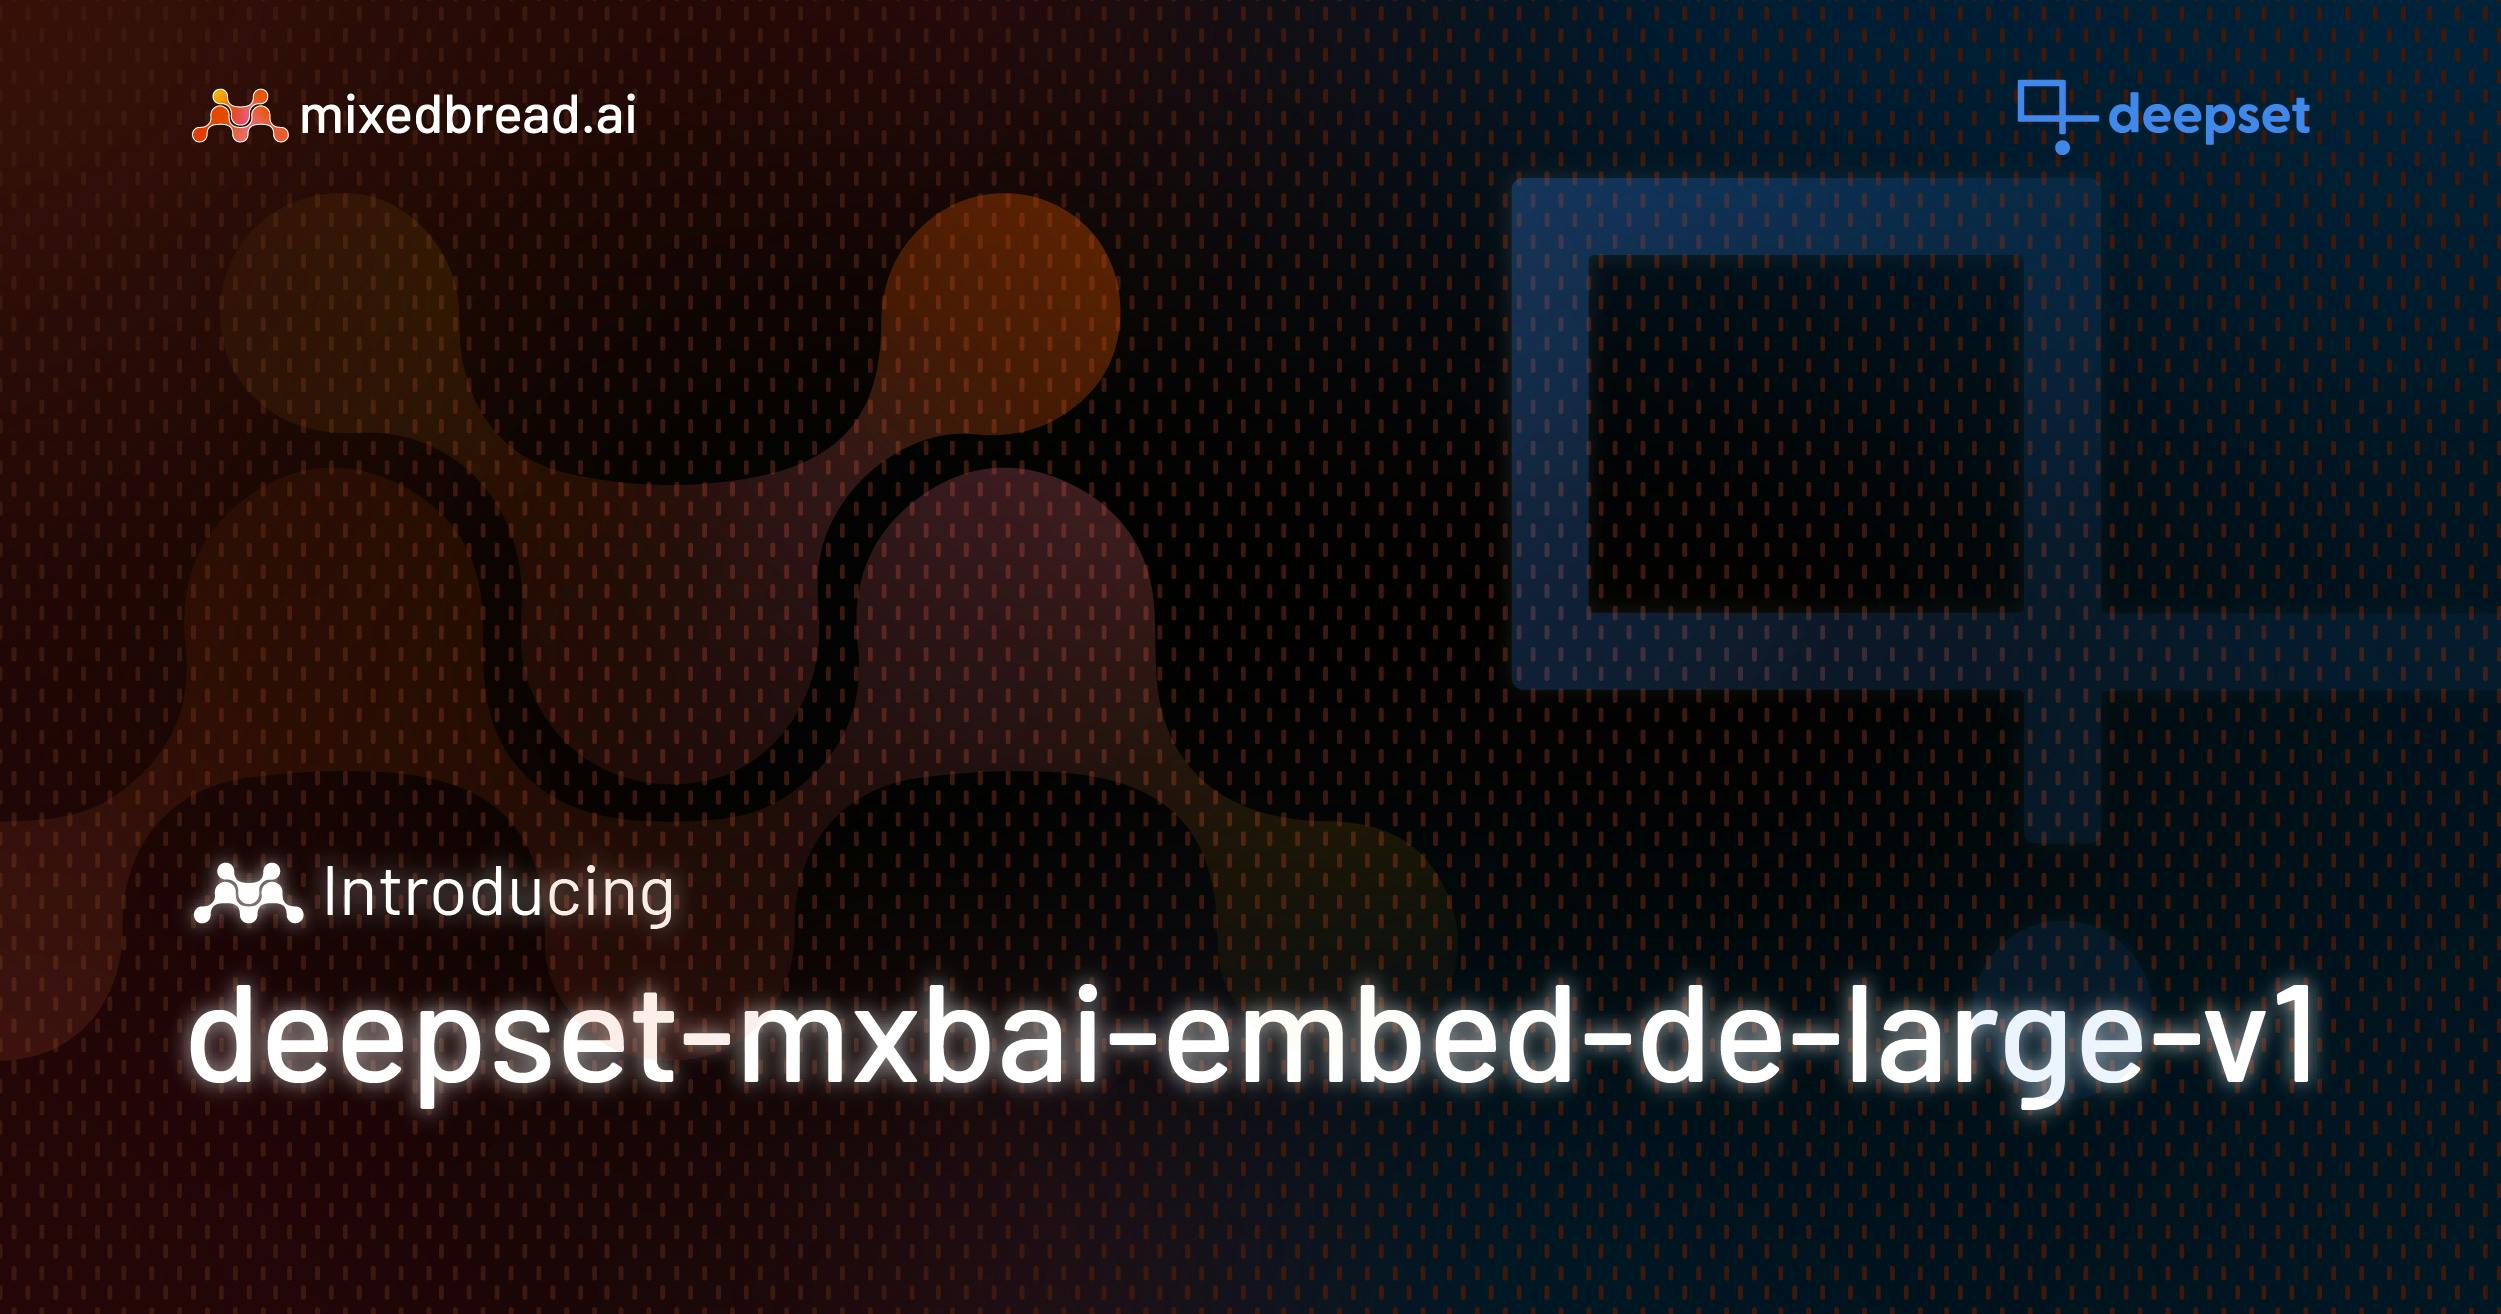 Open Source Gets DE-licious:
Mixedbread x deepset German/English Embeddings